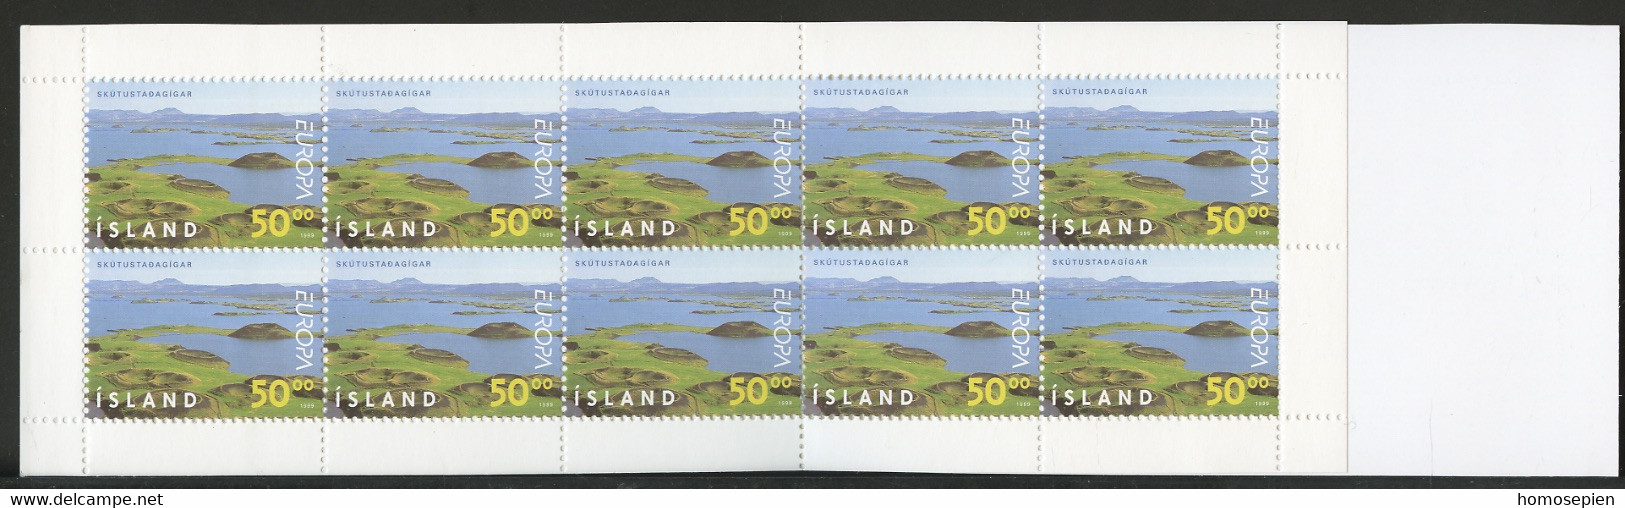 Islande - Island - Iceland Carnet 1999 Y&T N°C866 - Michel N°MH913 *** - 50k EUROPA - Booklets